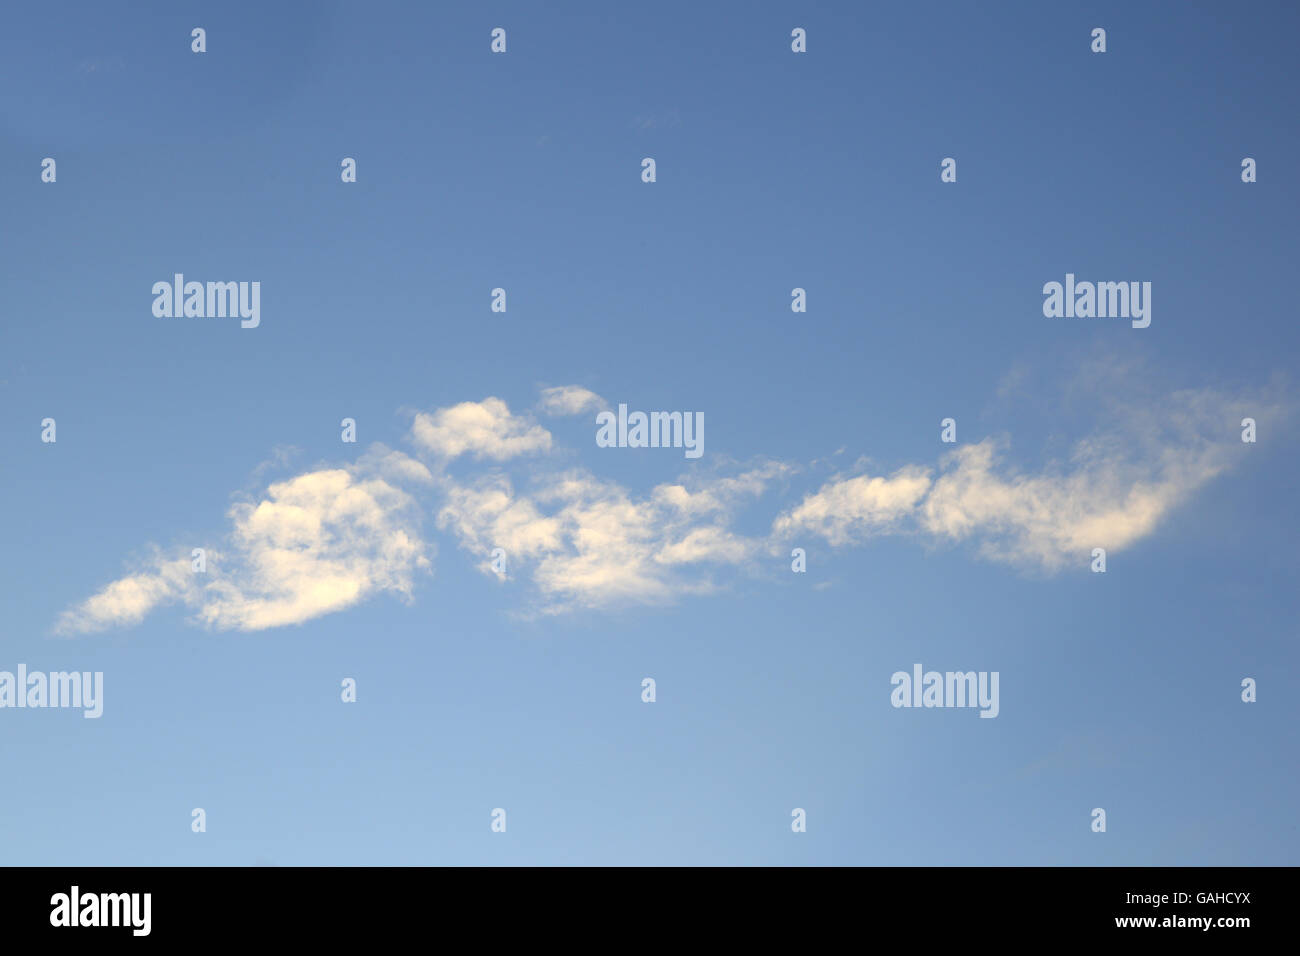 Einige kleine weiße Wolken über blauen Himmel Stockfoto